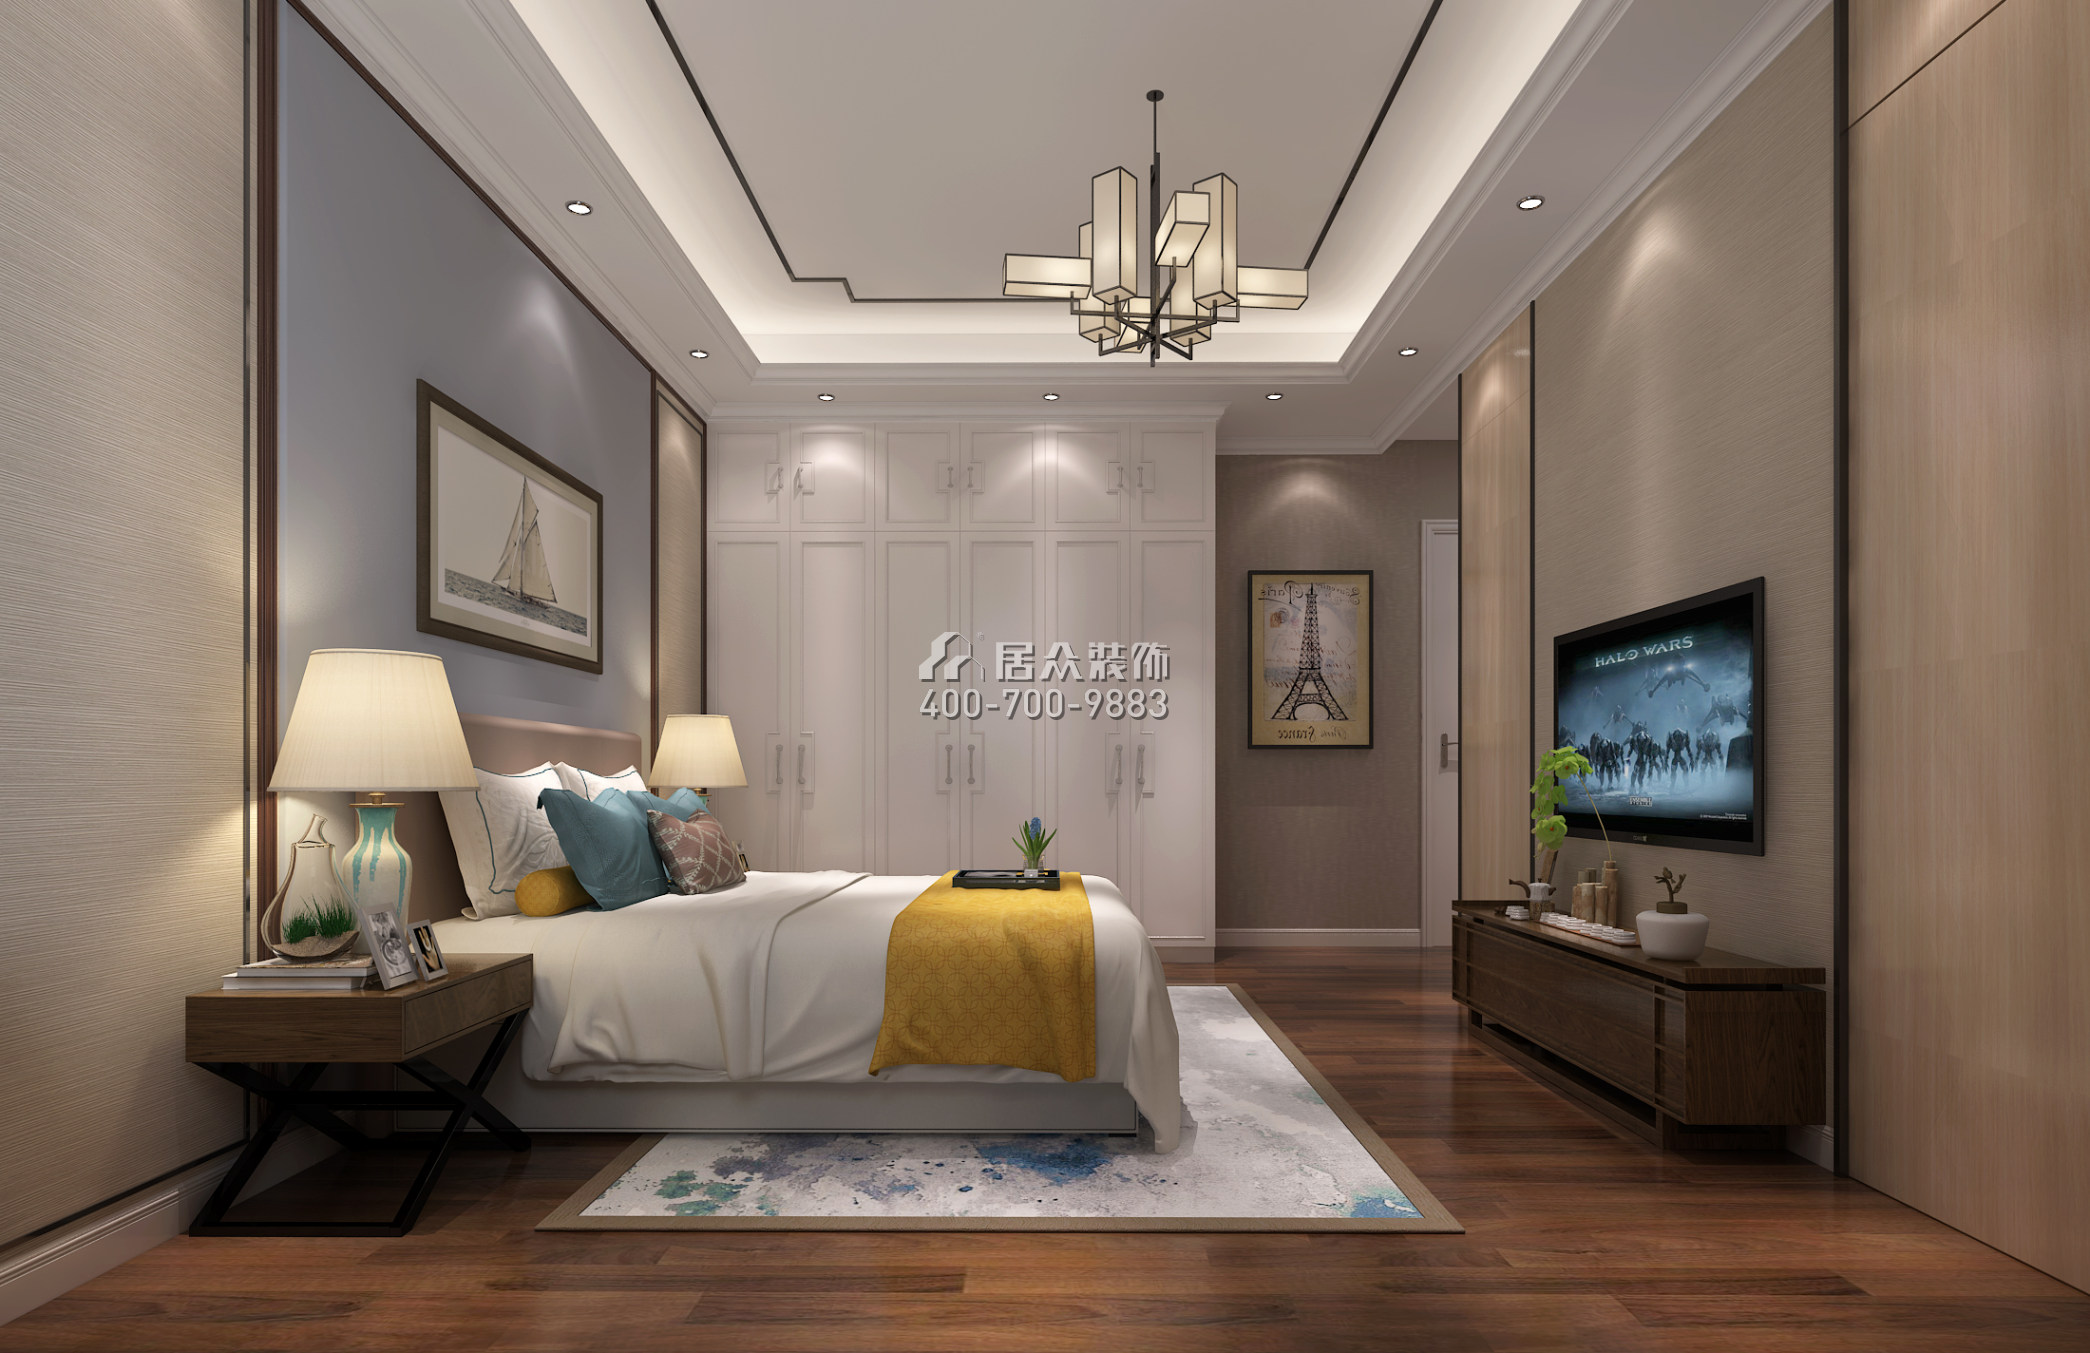 天悅灣160平方米中式風格平層戶型臥室裝修效果圖